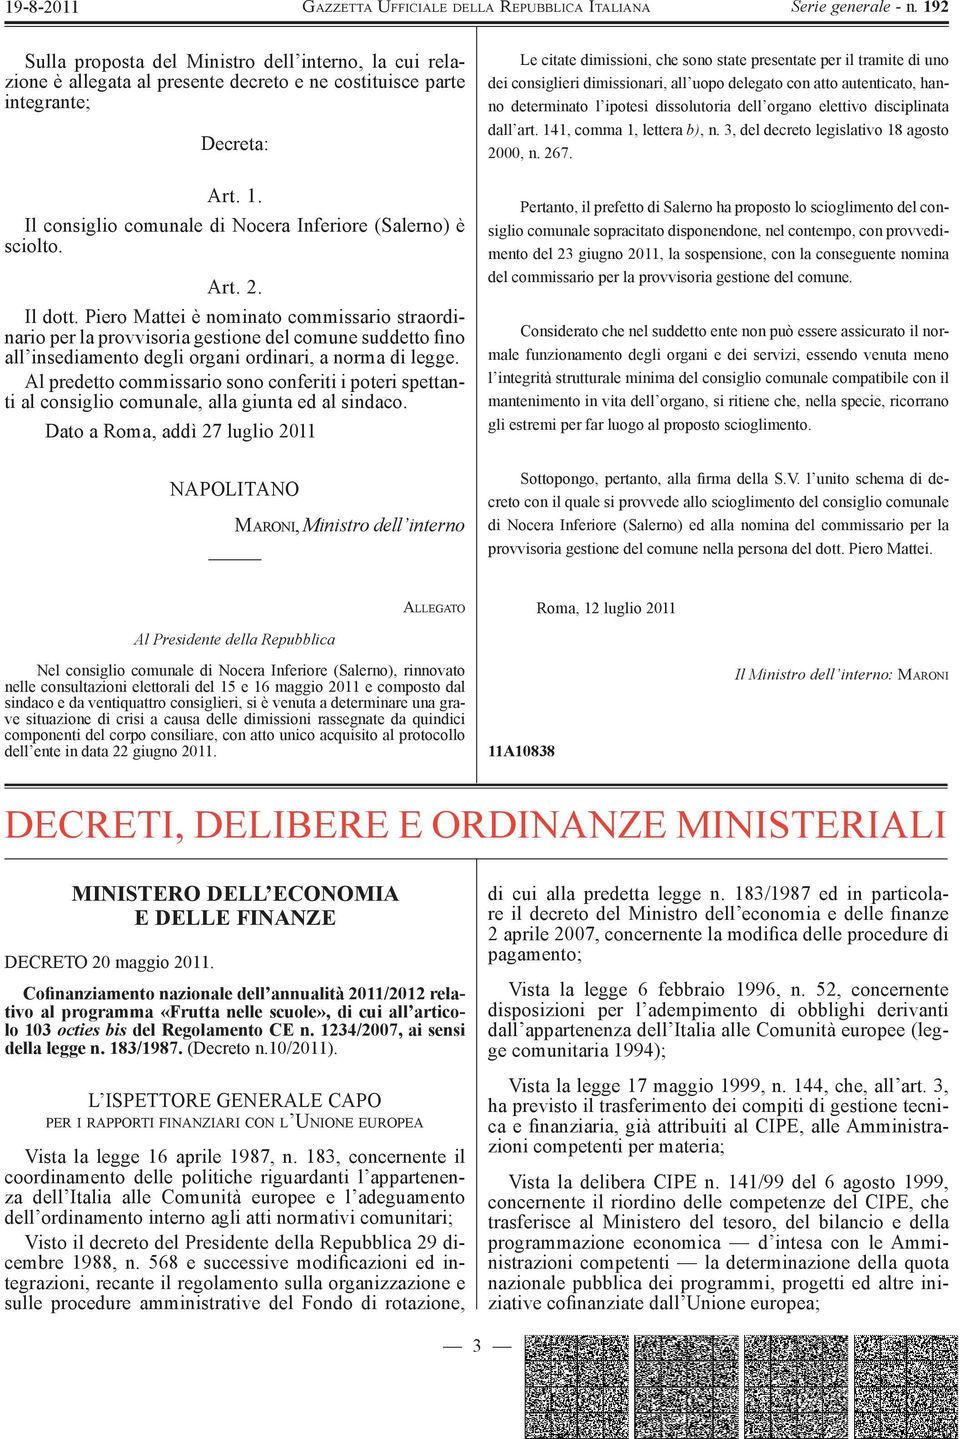 Piero Mattei è nominato commissario straordinario per la provvisoria gestione del comune suddetto fino all insediamento degli organi ordinari, a norma di legge.